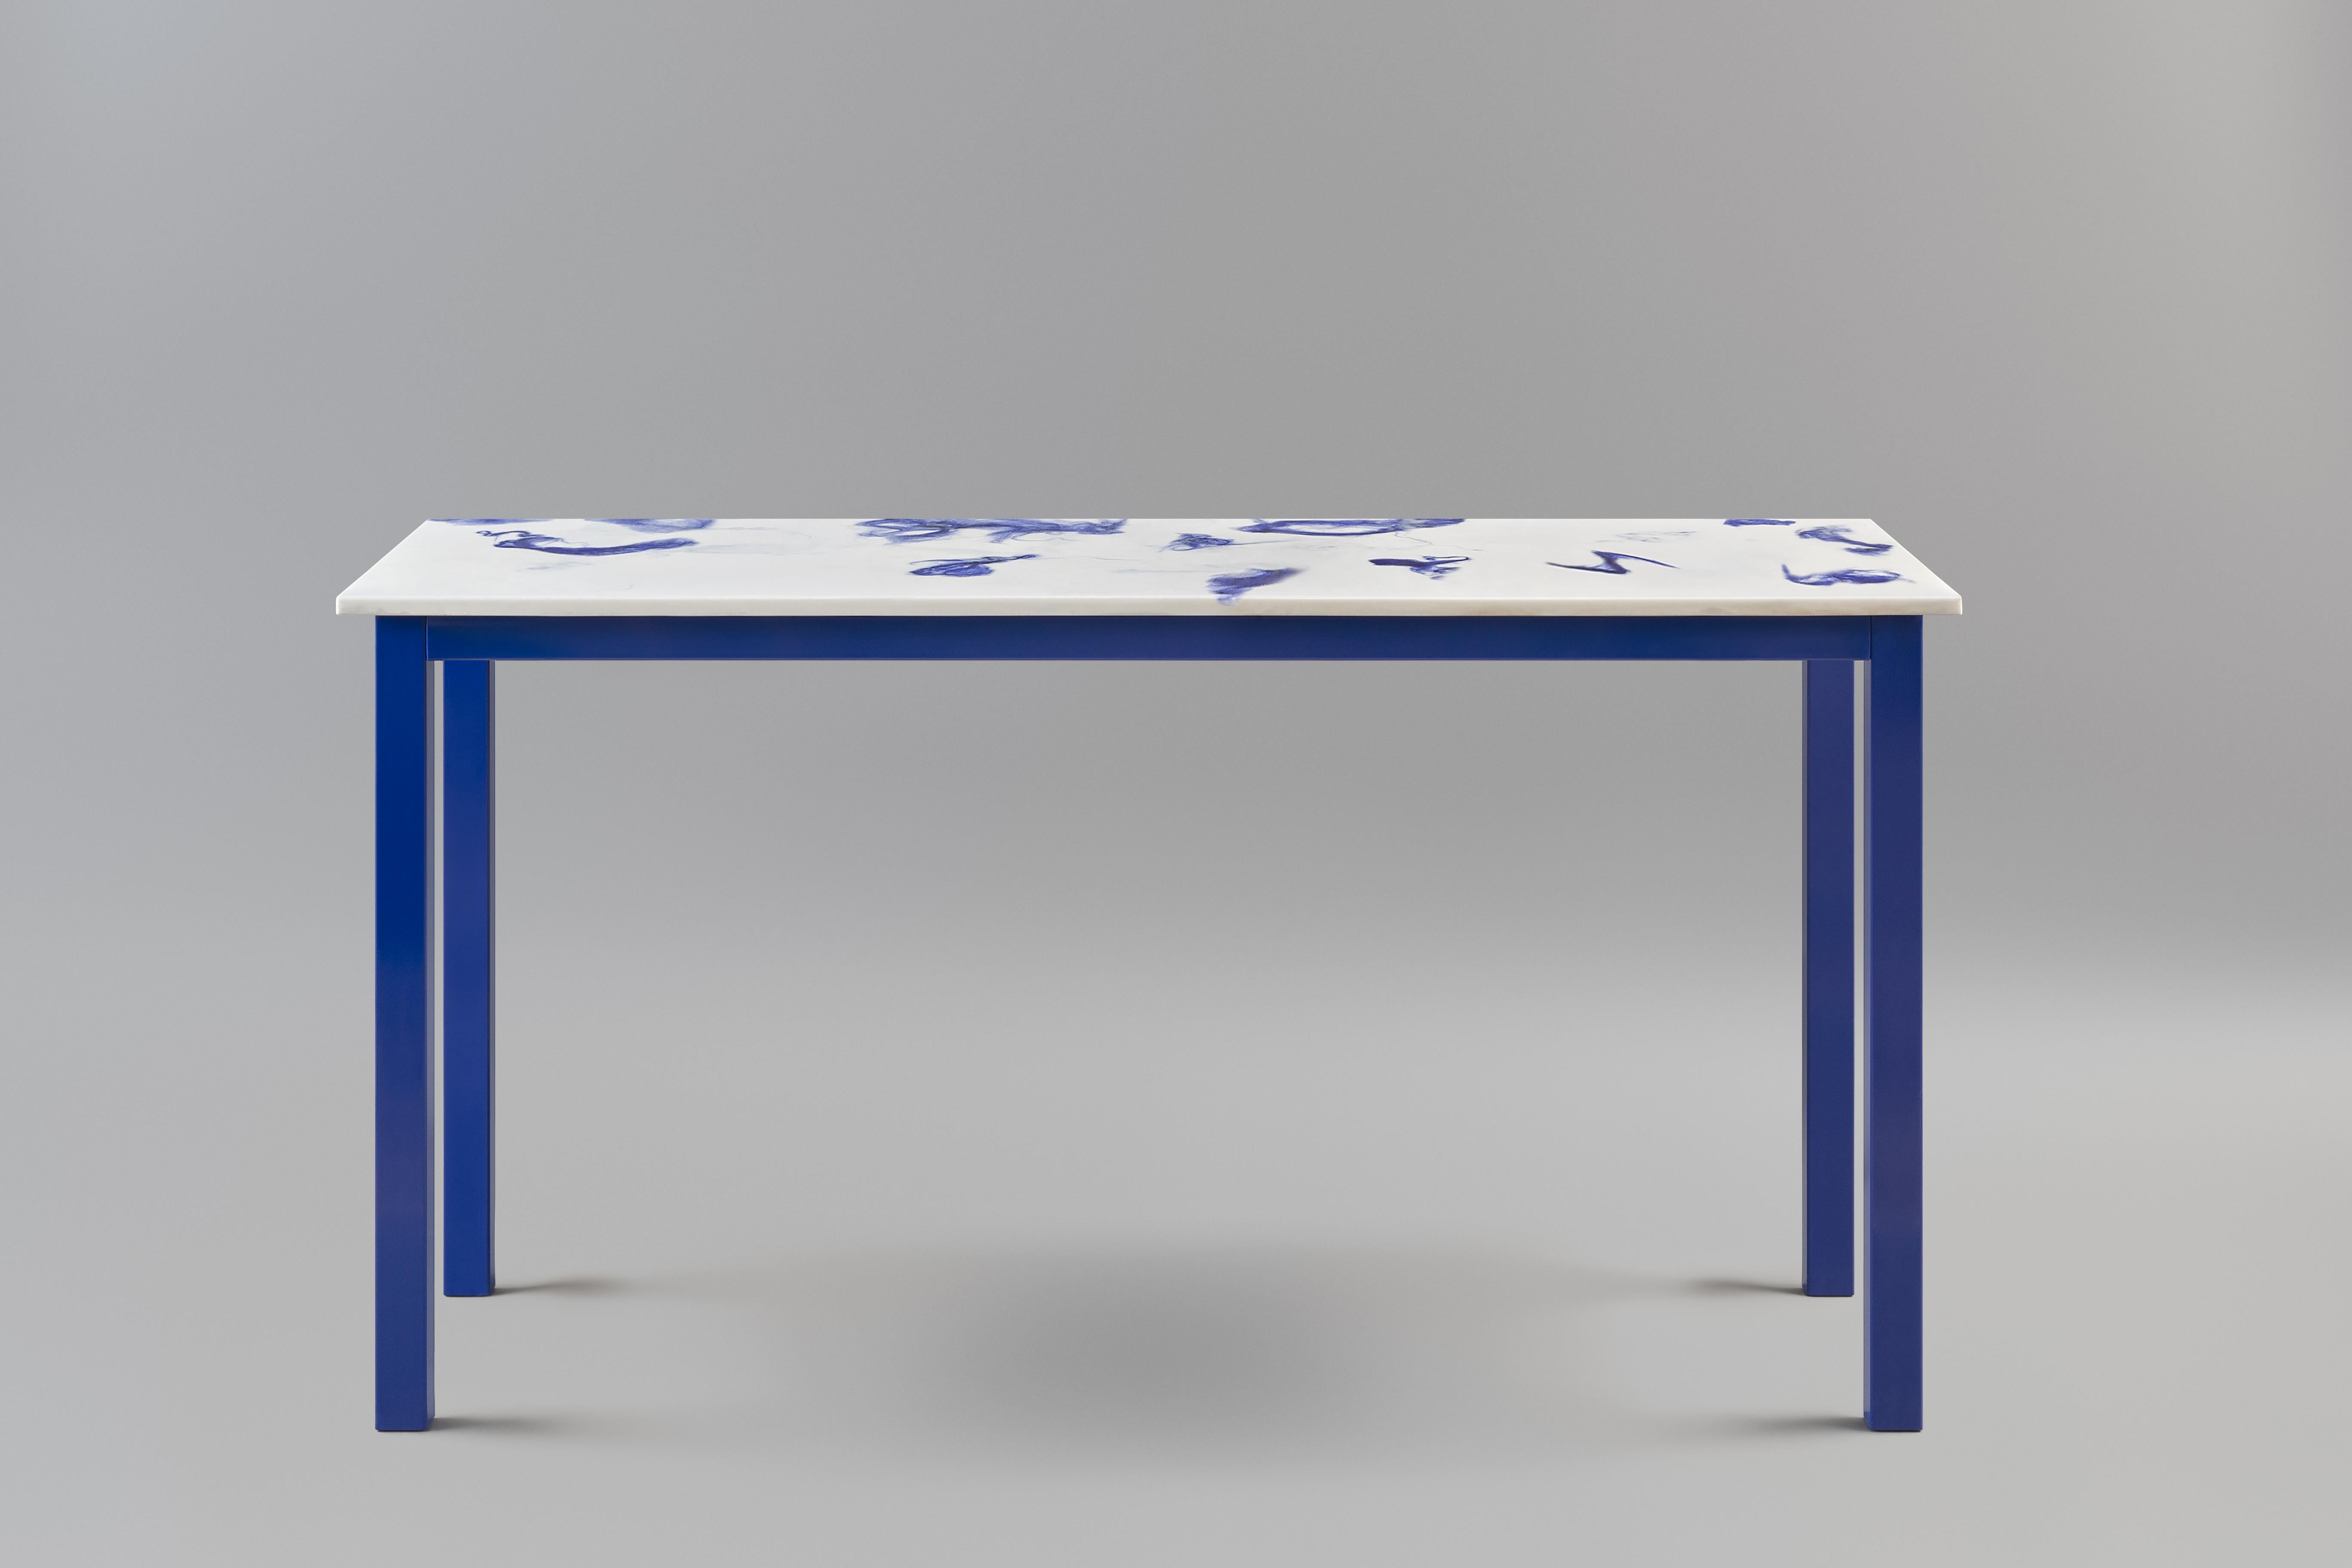 Die Fluent-Konsole.
Die Tischplatte ist aus Marwoolus-Material mit blauen Wollfasern und weißem Carrara-Marmor-Pulversockel gefertigt.
Die Stahlrahmenkonstruktion ist blau pulverbeschichtet.

Informationen zum Material:
Marwoolus ist ein neues,